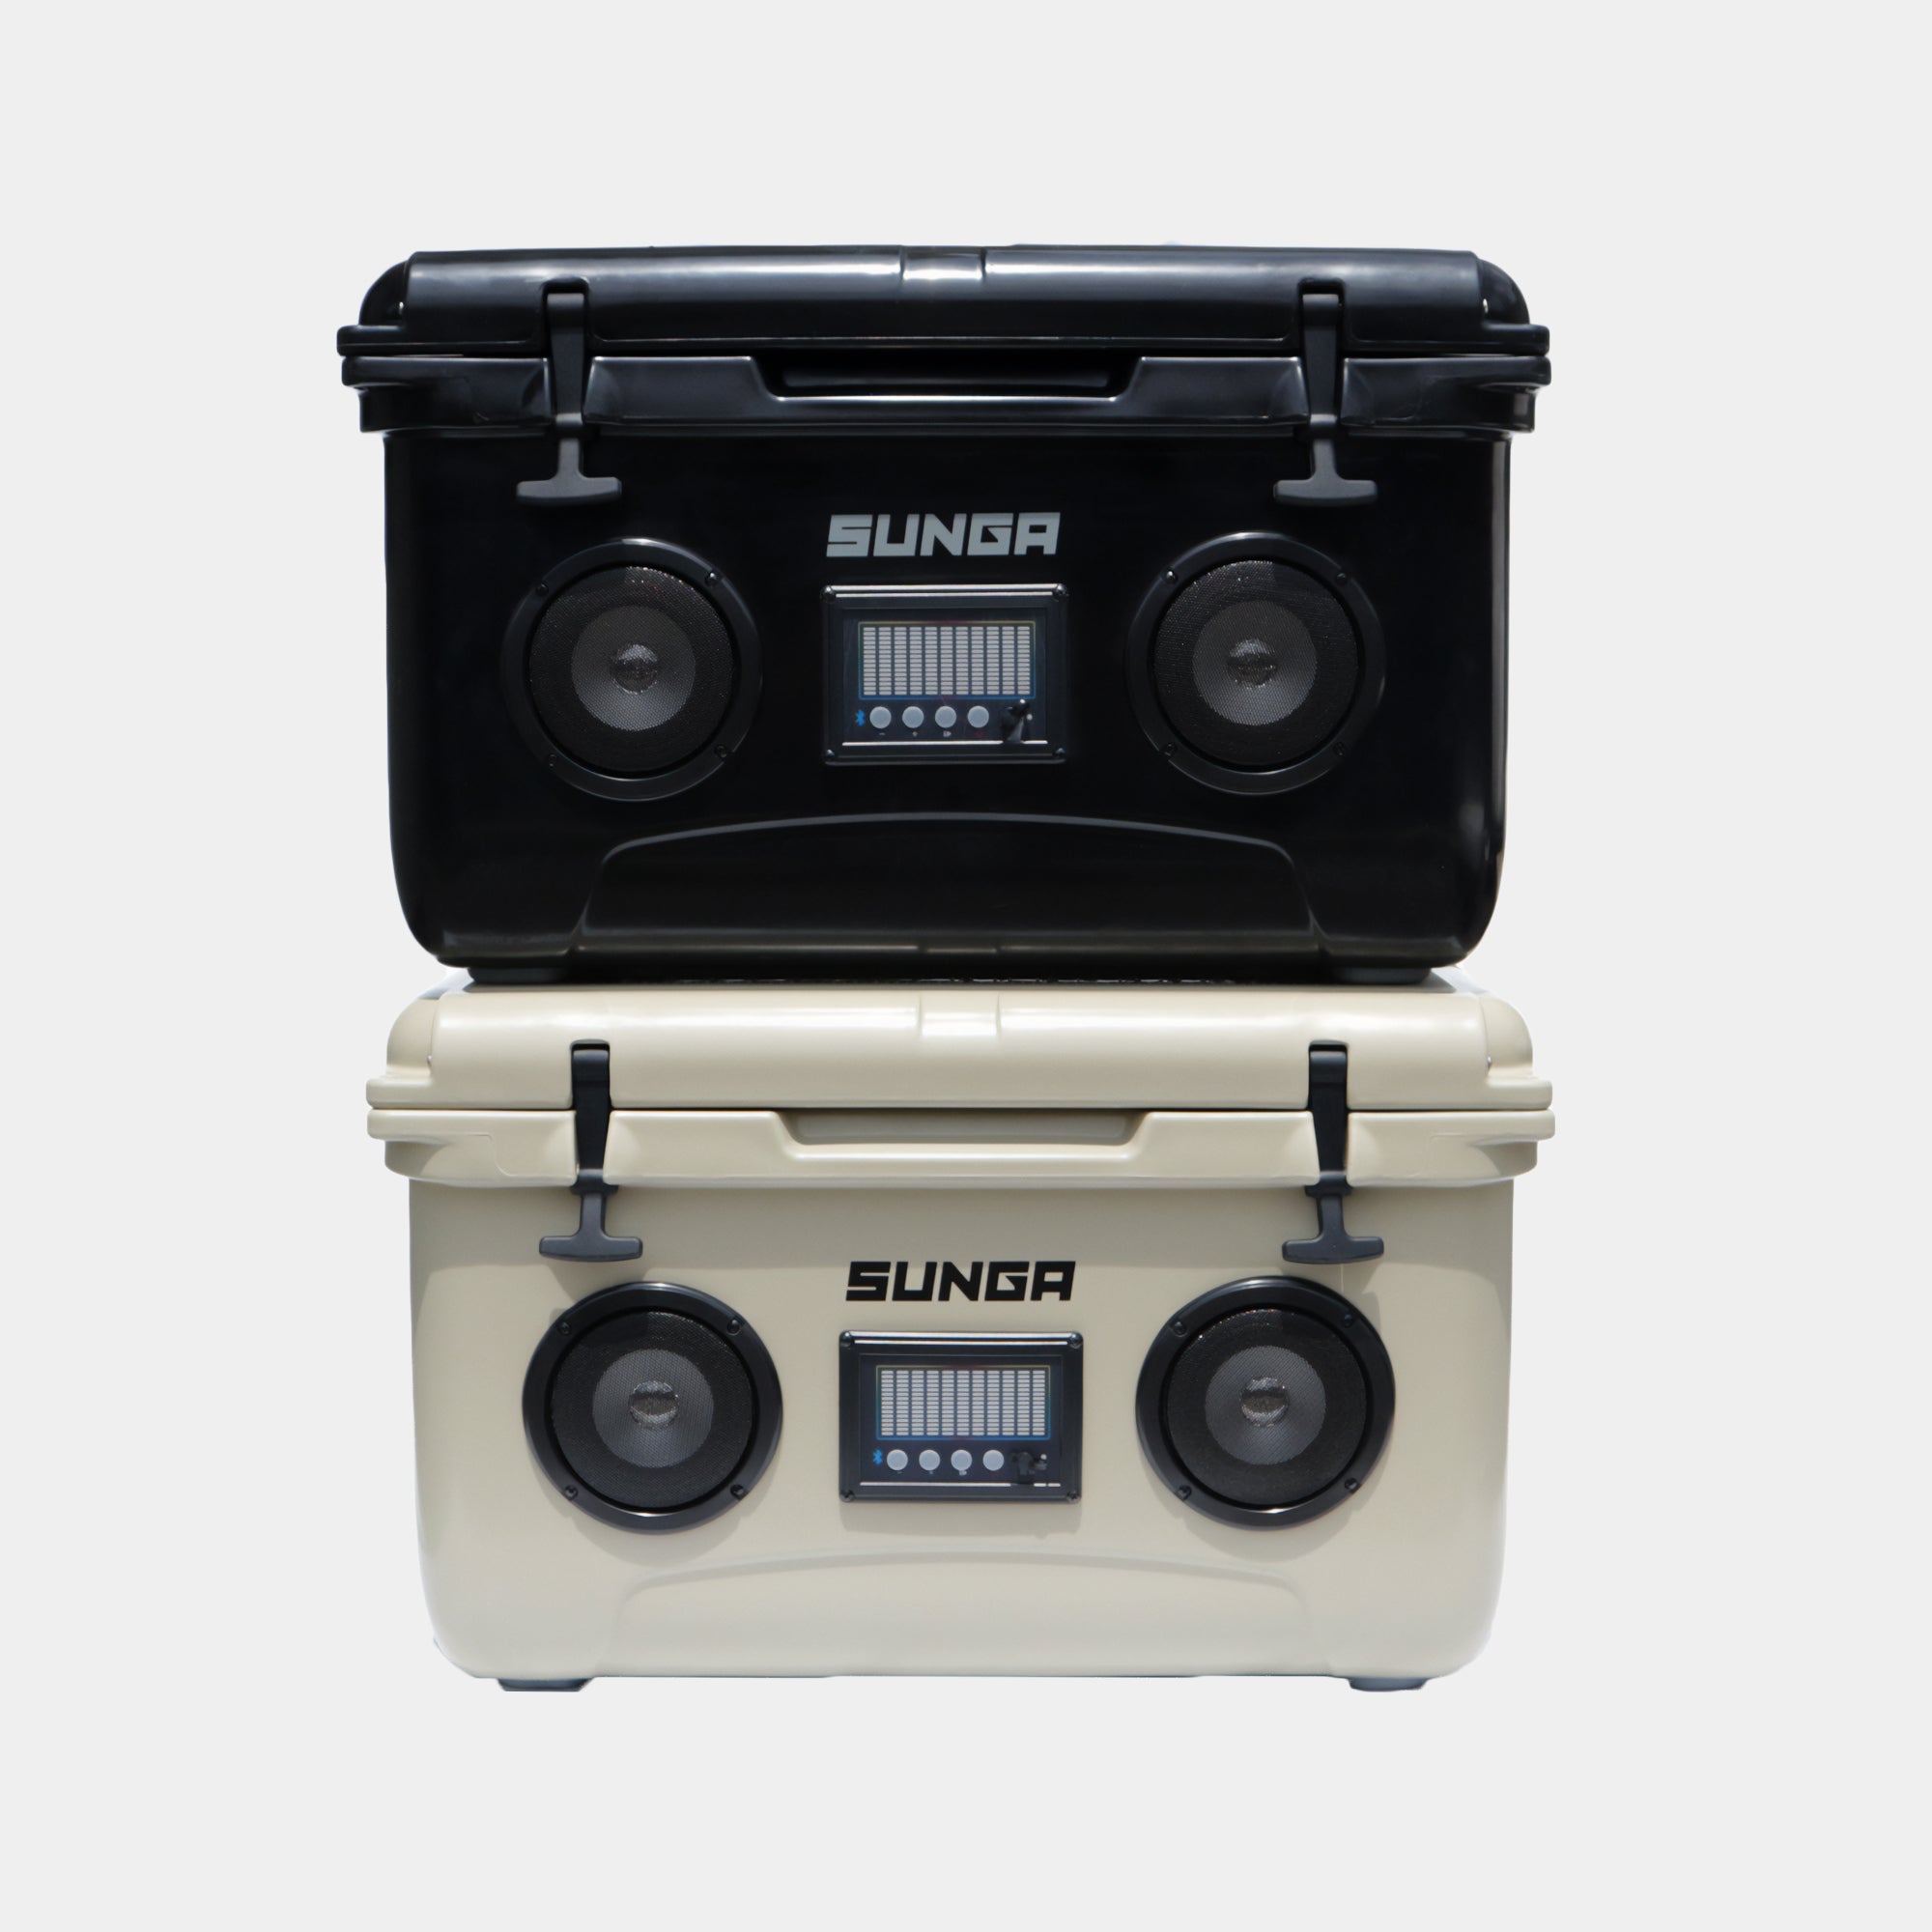 SUNGA クーラーボックス Bluetoothスピーカー – SUNGA Japan